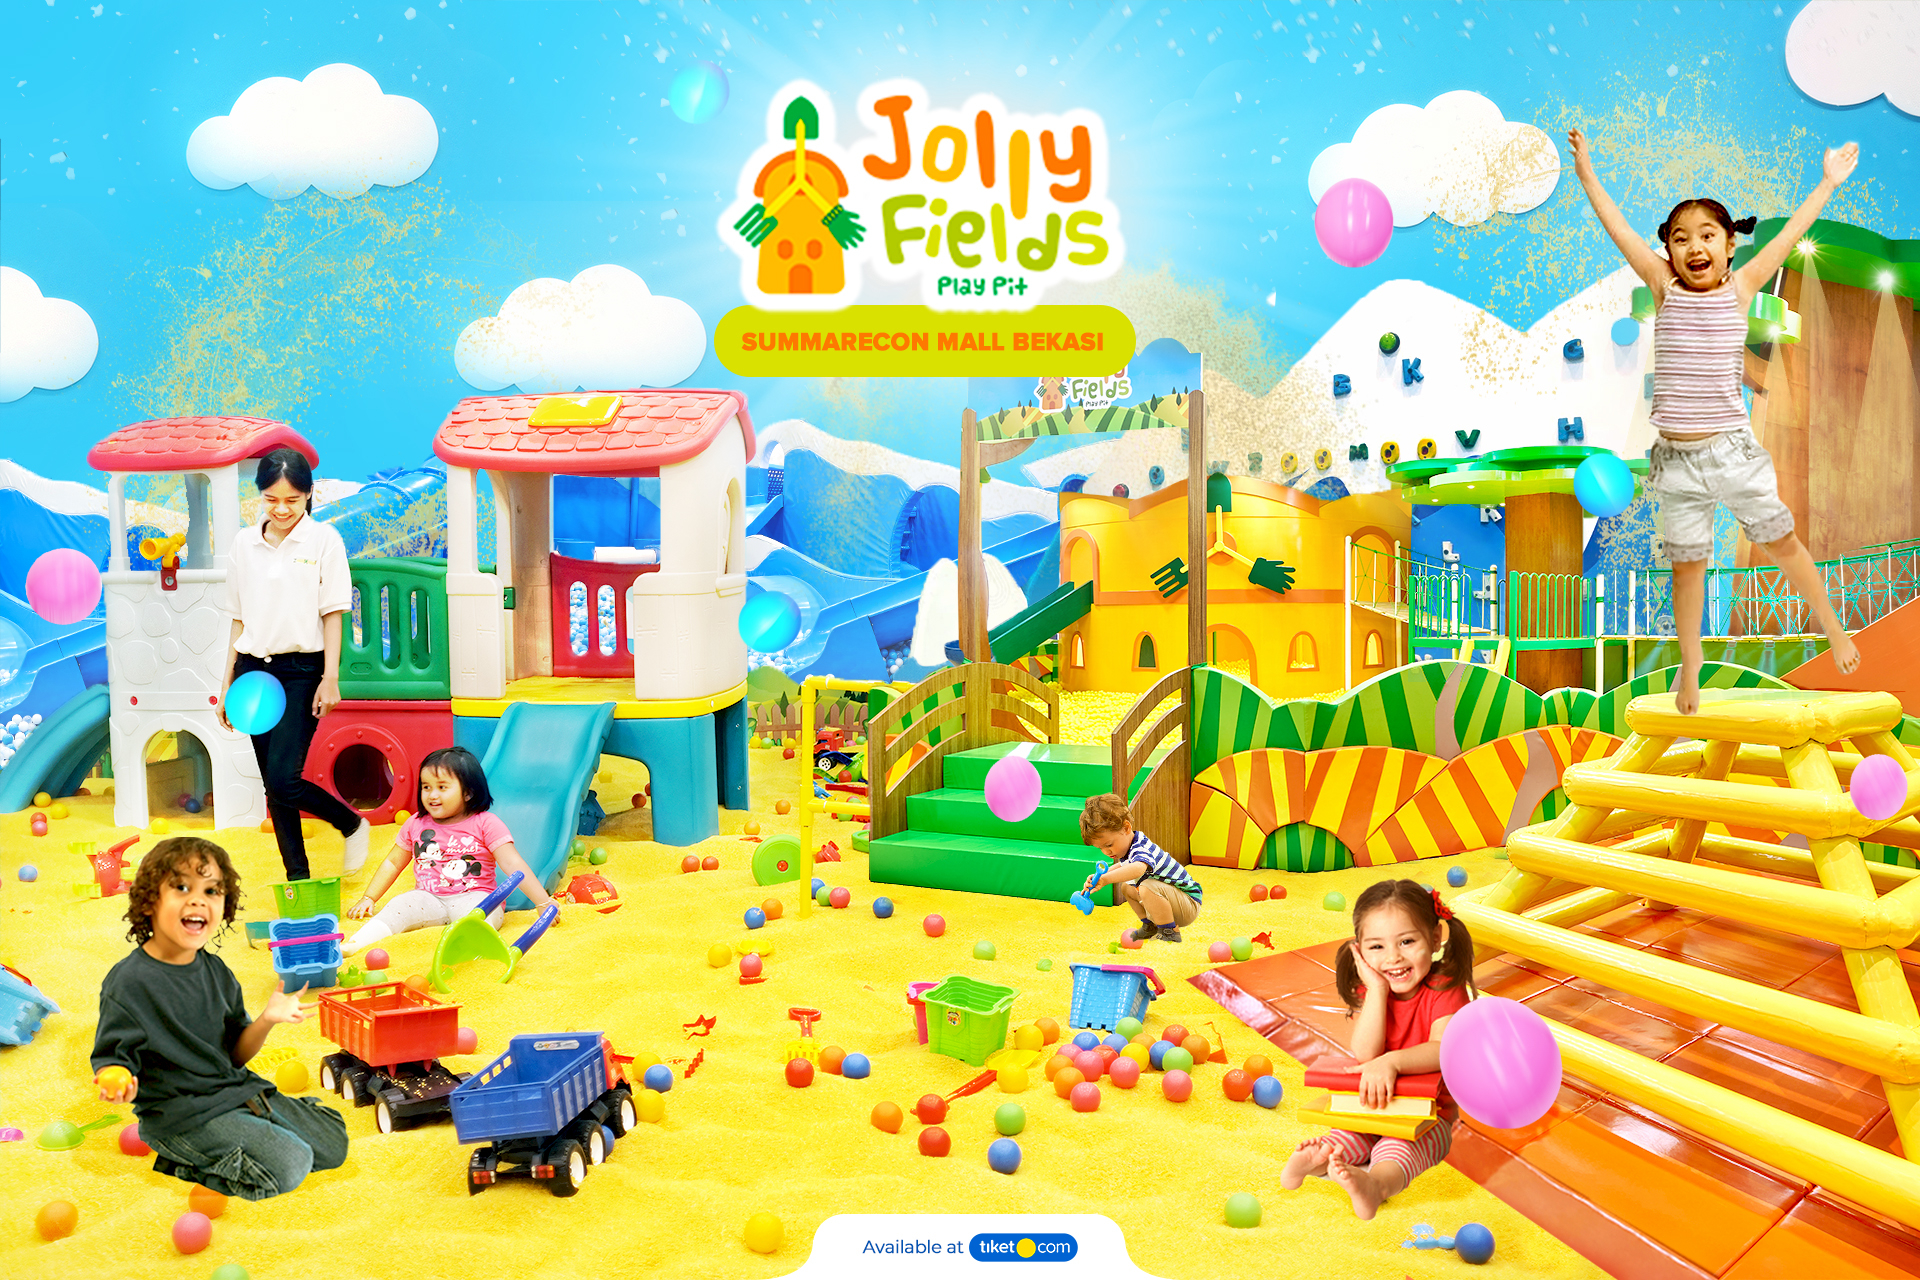 Jolly tiket Fields Summarecon Mall Bekasi.jpg